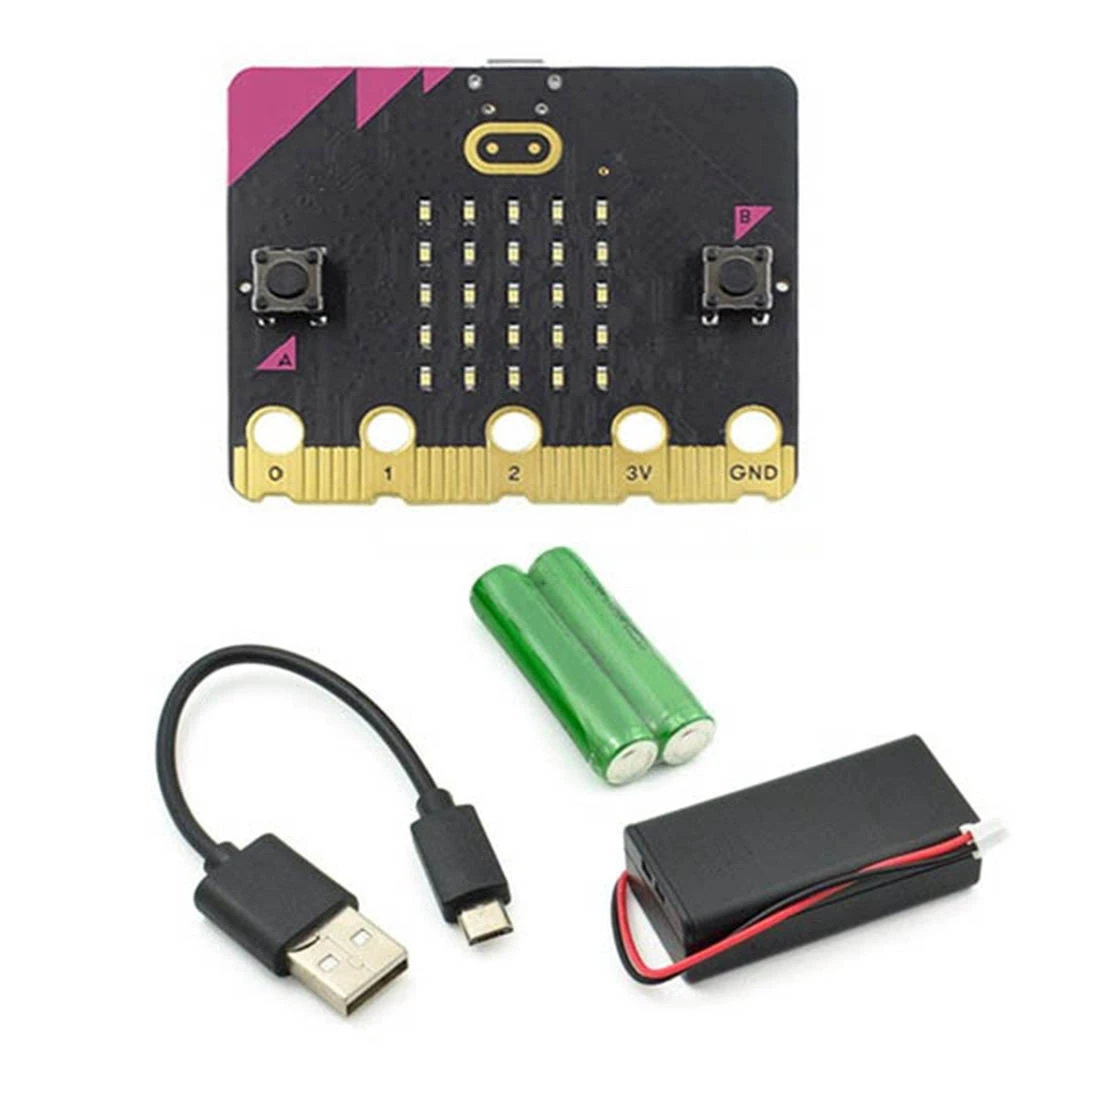 

Программируемая обучающая макетная плата Microbit V1.5 GO Kit для самостоятельной сборки